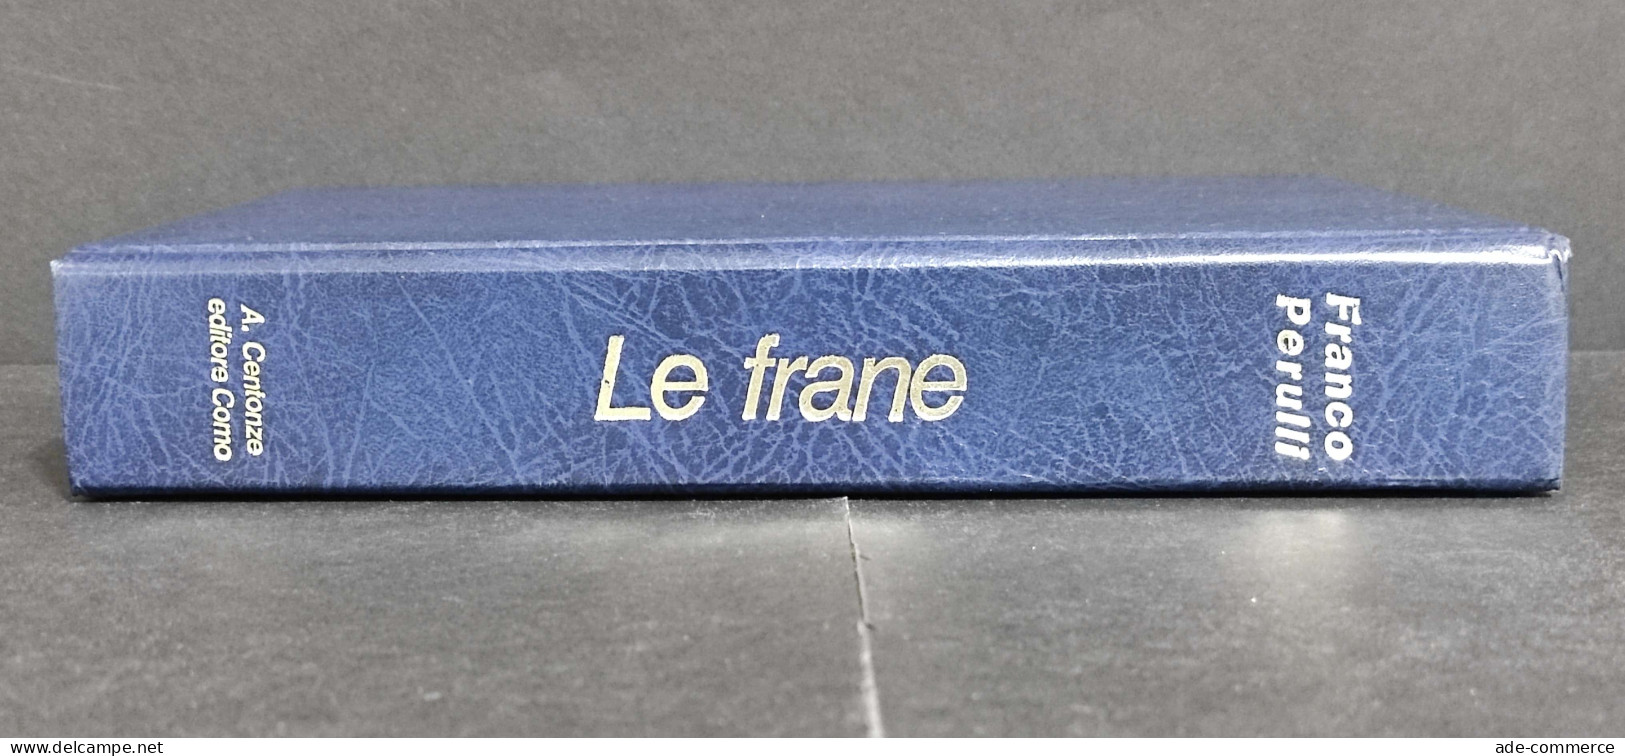 Le Frane - Studio Dell'Azione Dell'Acqua - F. Perulli - Ed. Centonze - 1978 - Matematica E Fisica